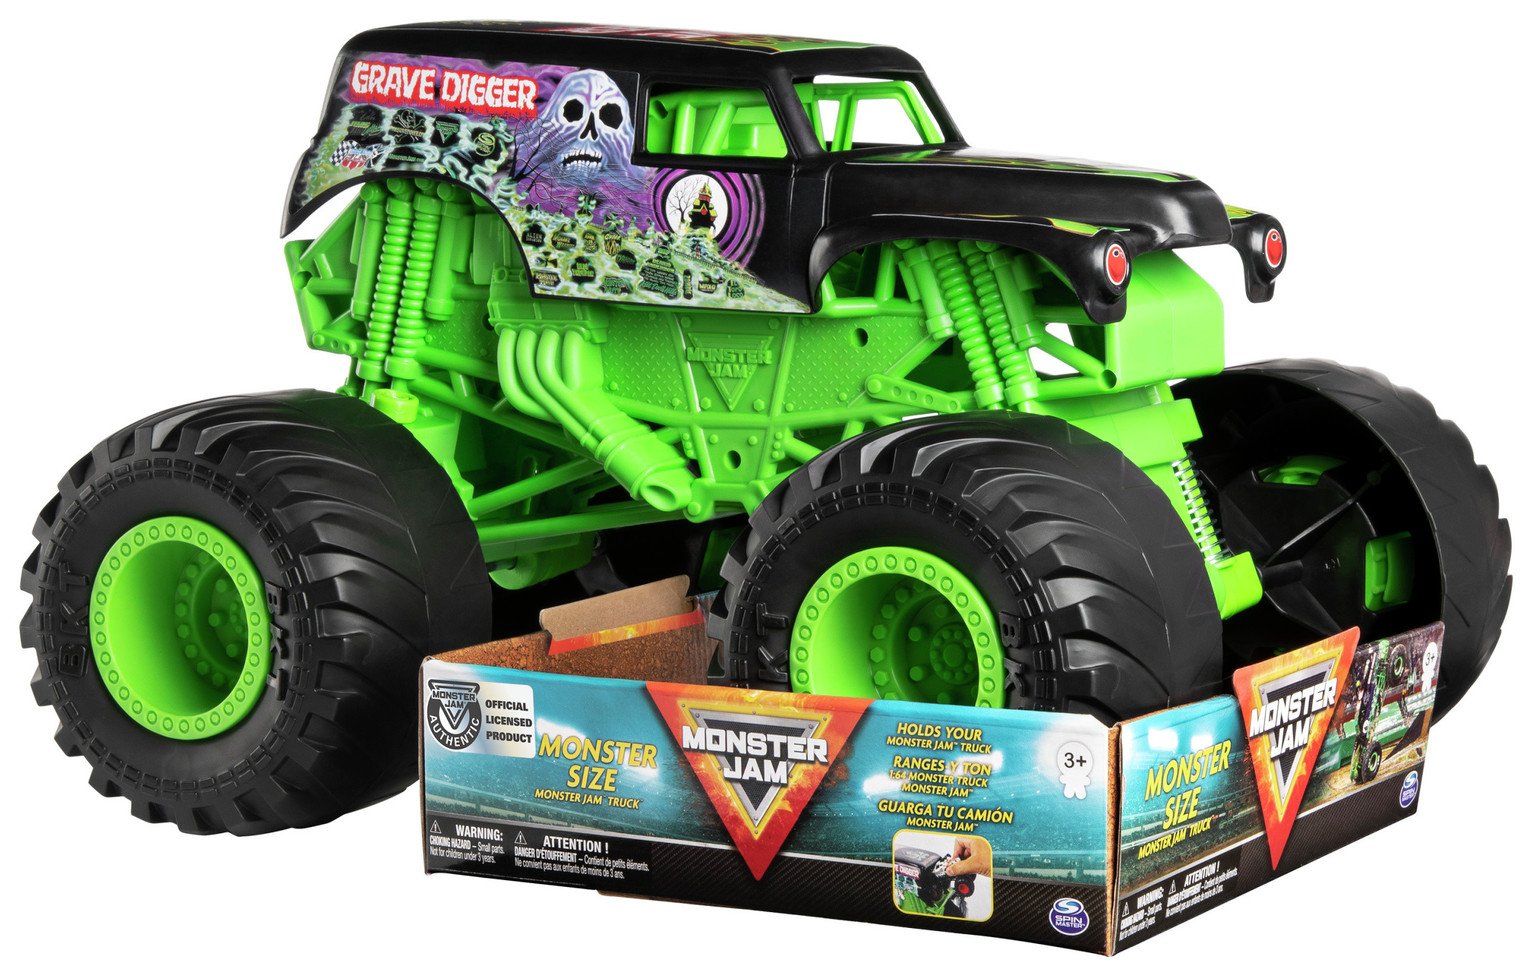 Monster Jam Grave Digger 1:10 Monster Truck